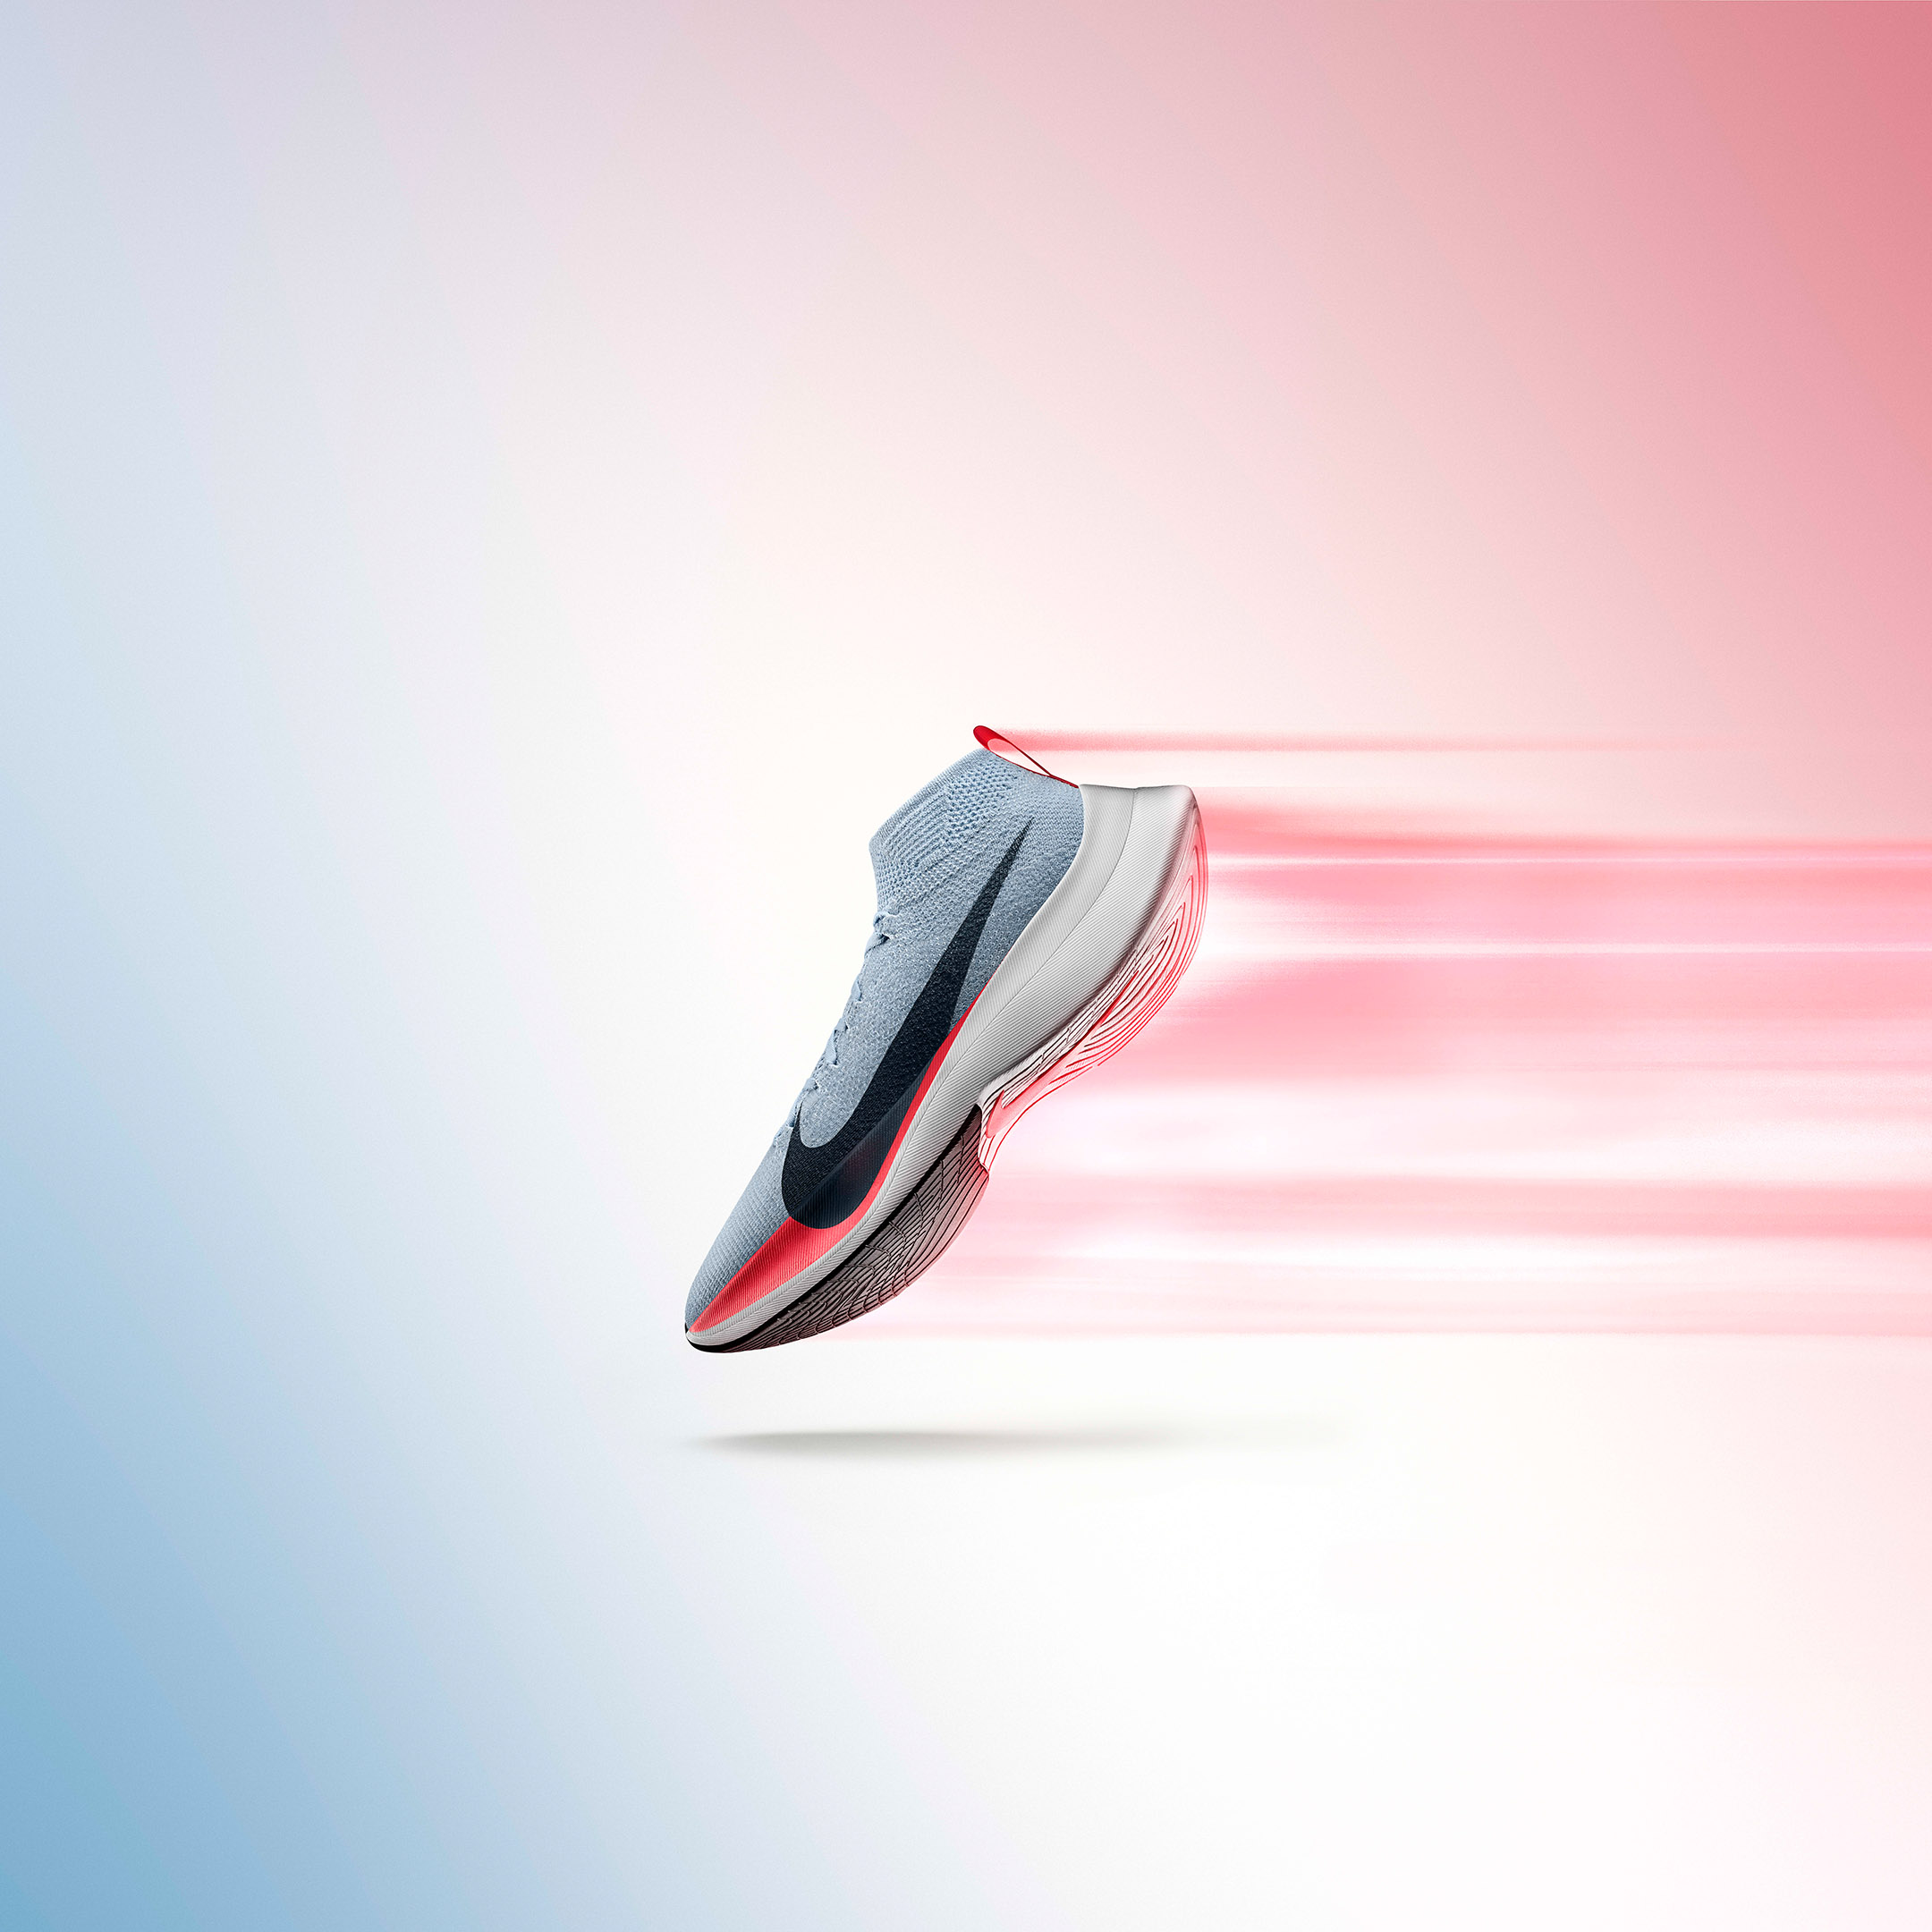 Zoom Vaporfly Elite: Mit diesem Laufschuh will Nike den Marathon unter zwei Stunden laufen.